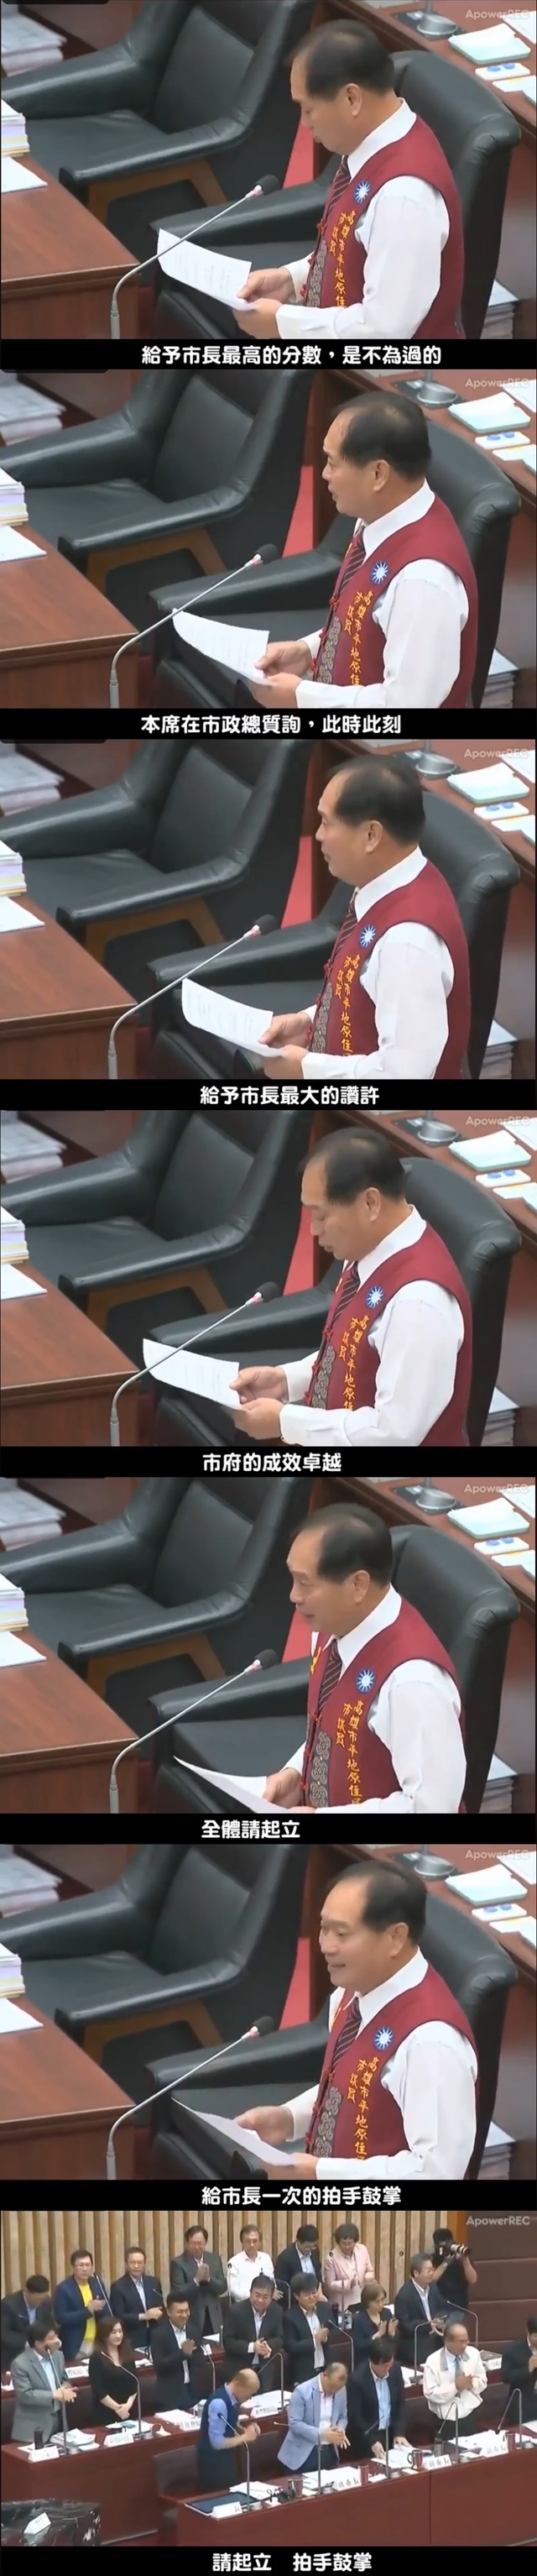 高雄市市議會總質詢，有議員要求列席官員全體起立為韓市長鼓掌。(翻攝臉書打馬悍將粉絲團)